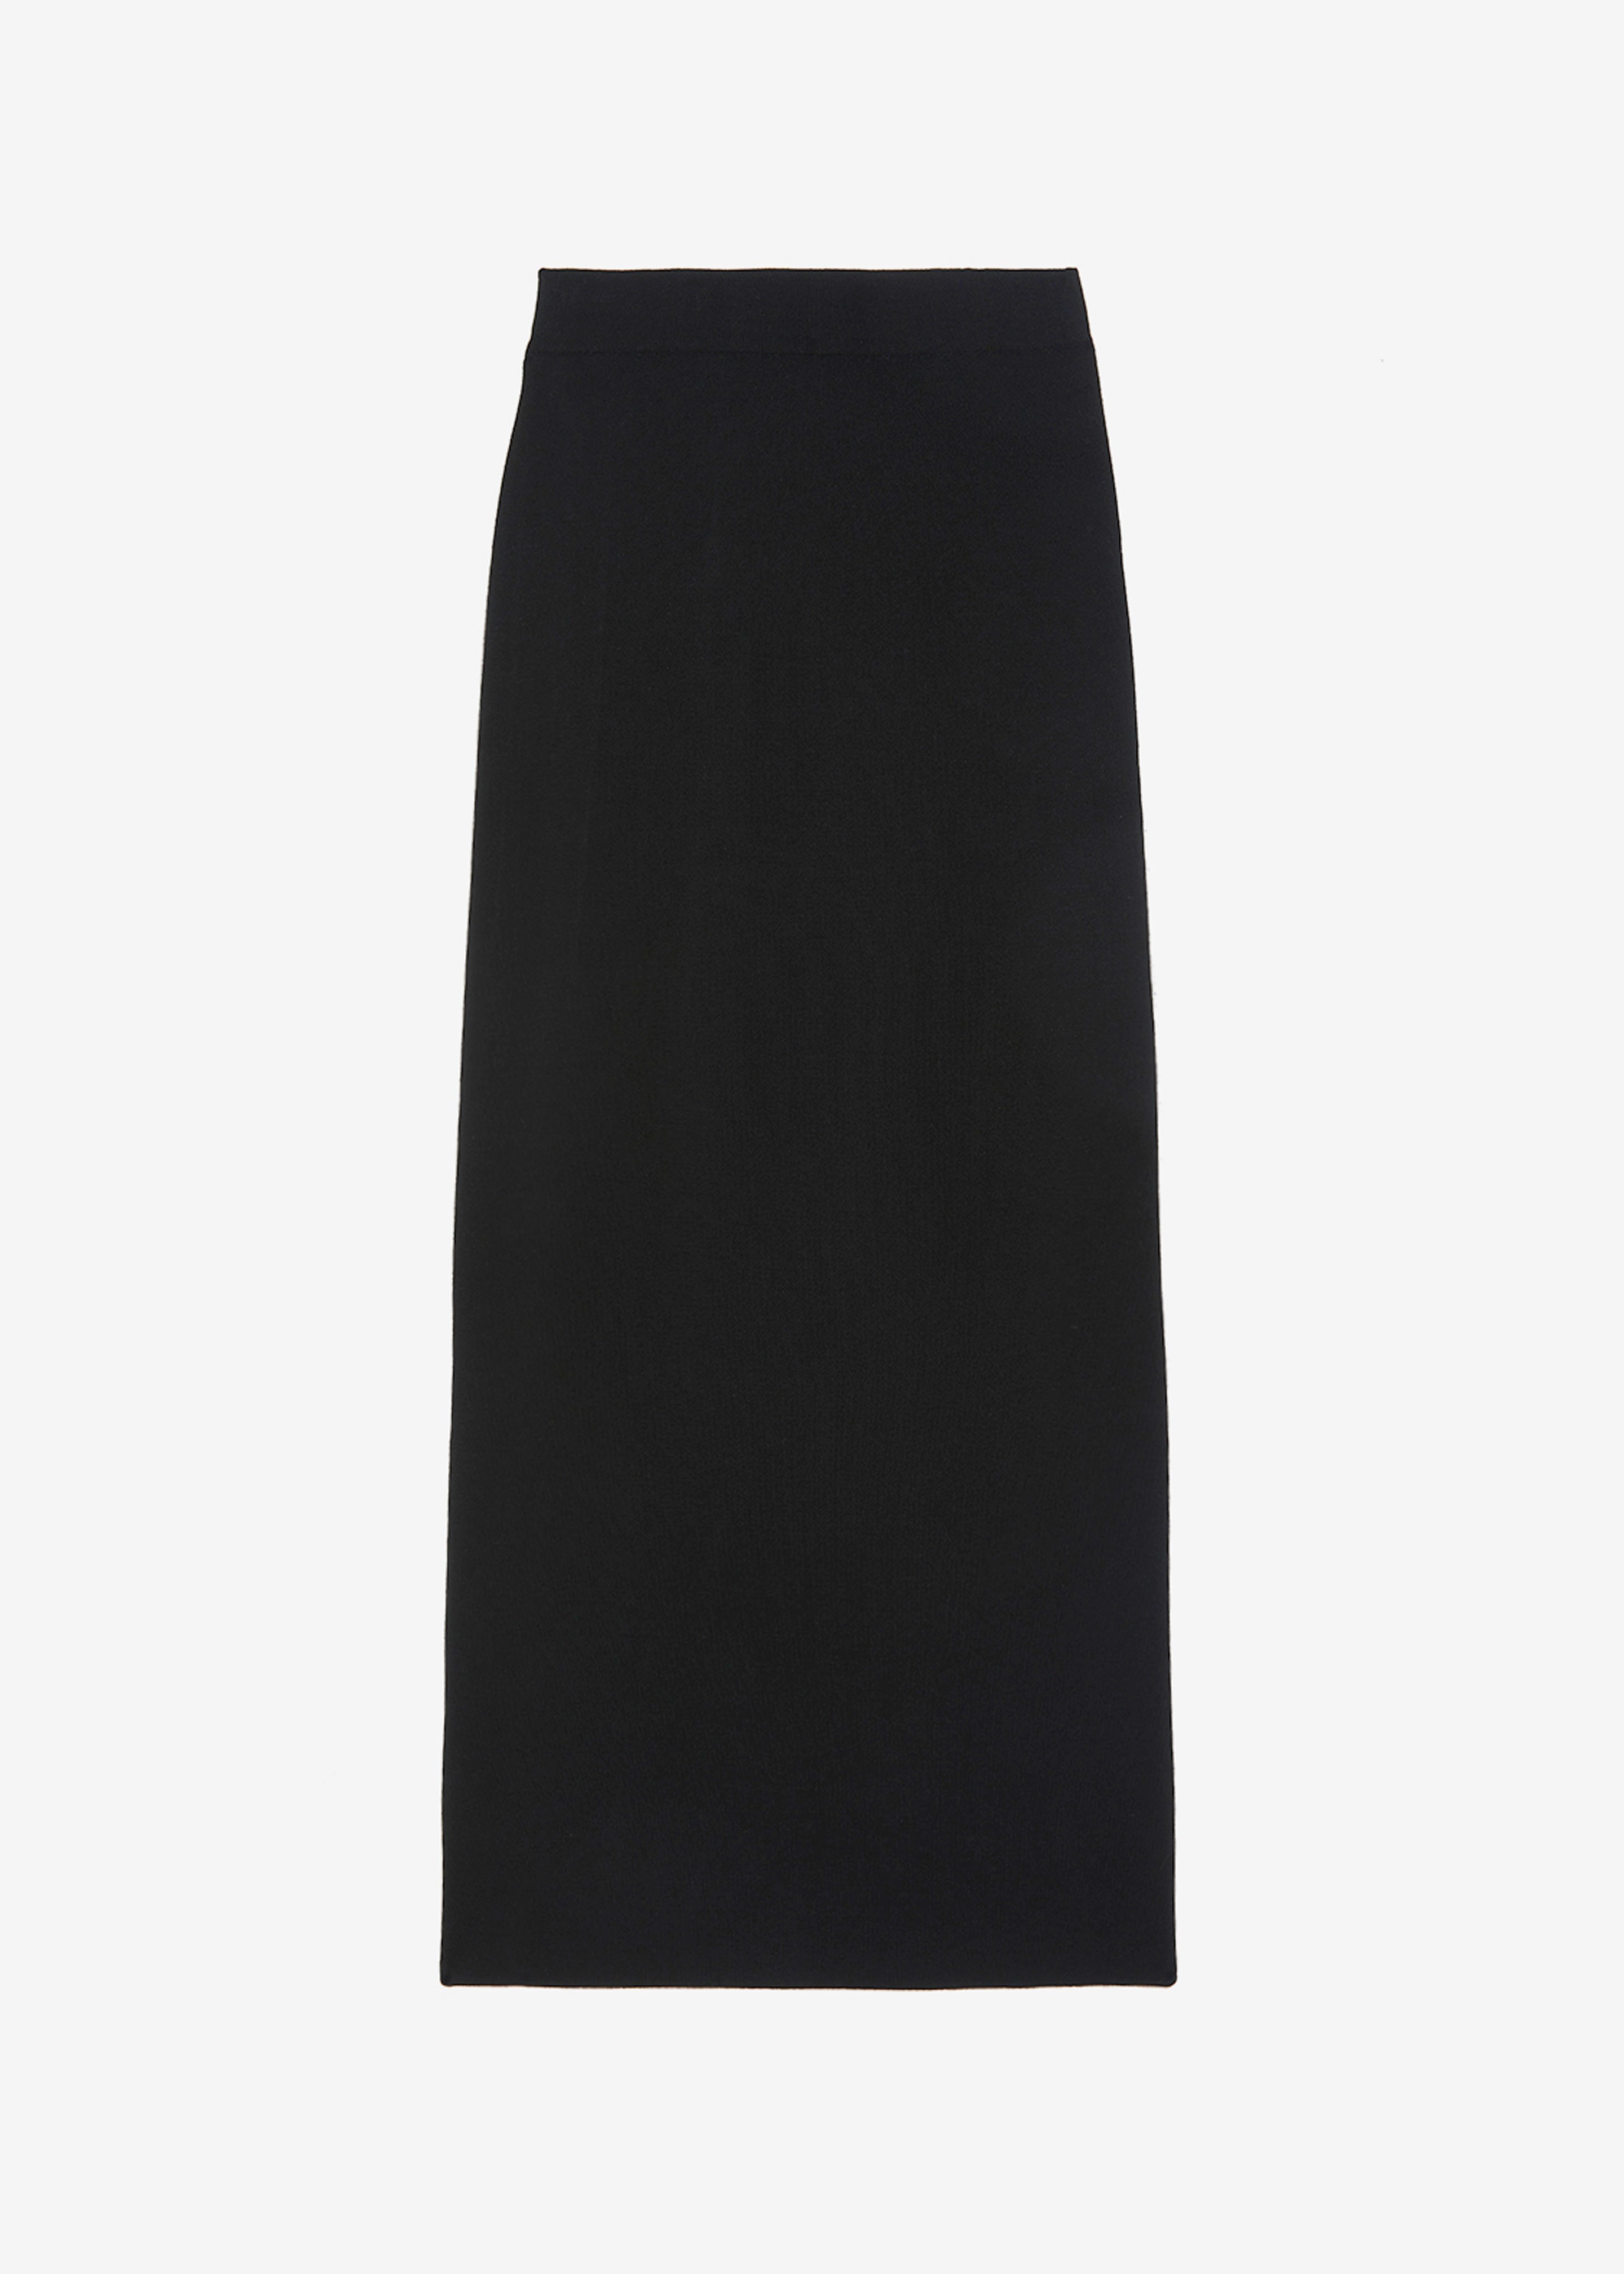 Clover Knit Skirt - Black - 7